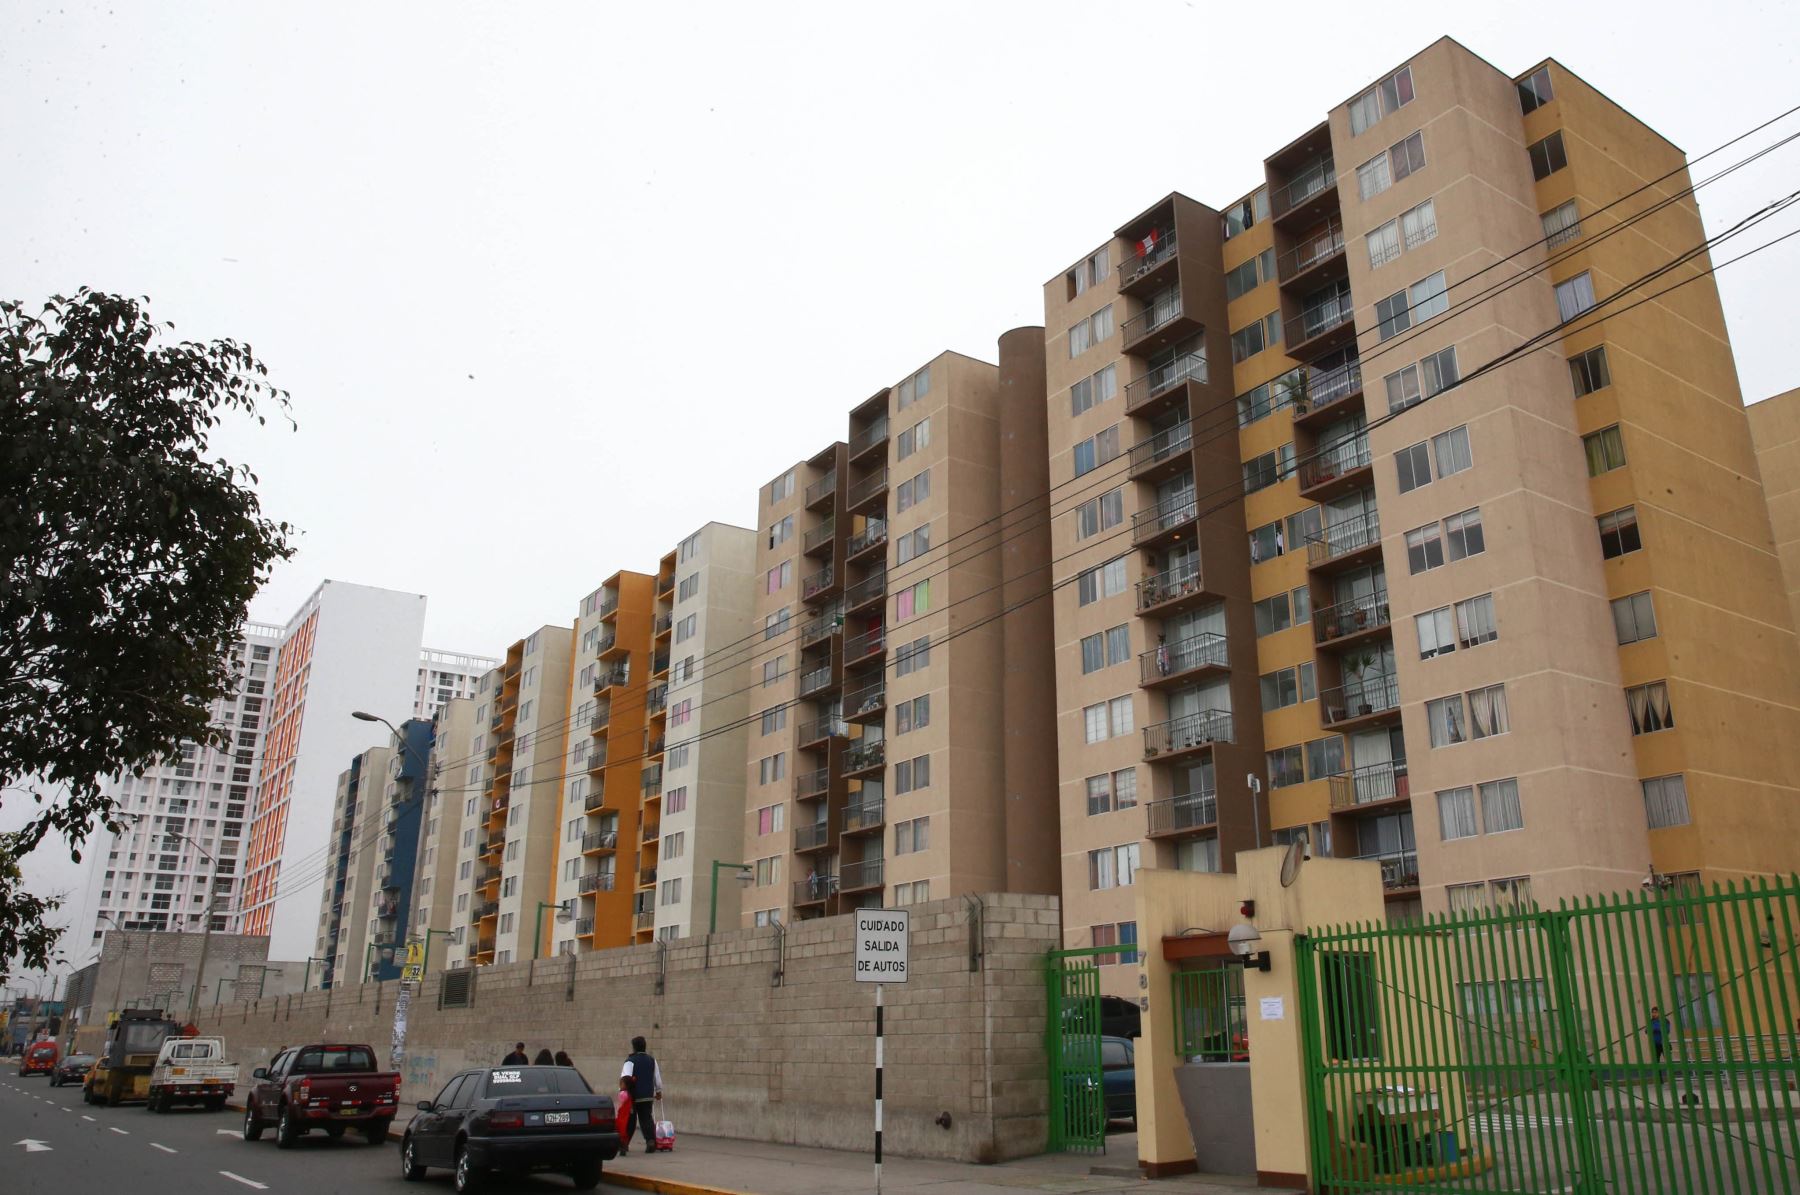 Venta de viviendas en Lima se incrementó 24% al cierre del 2018